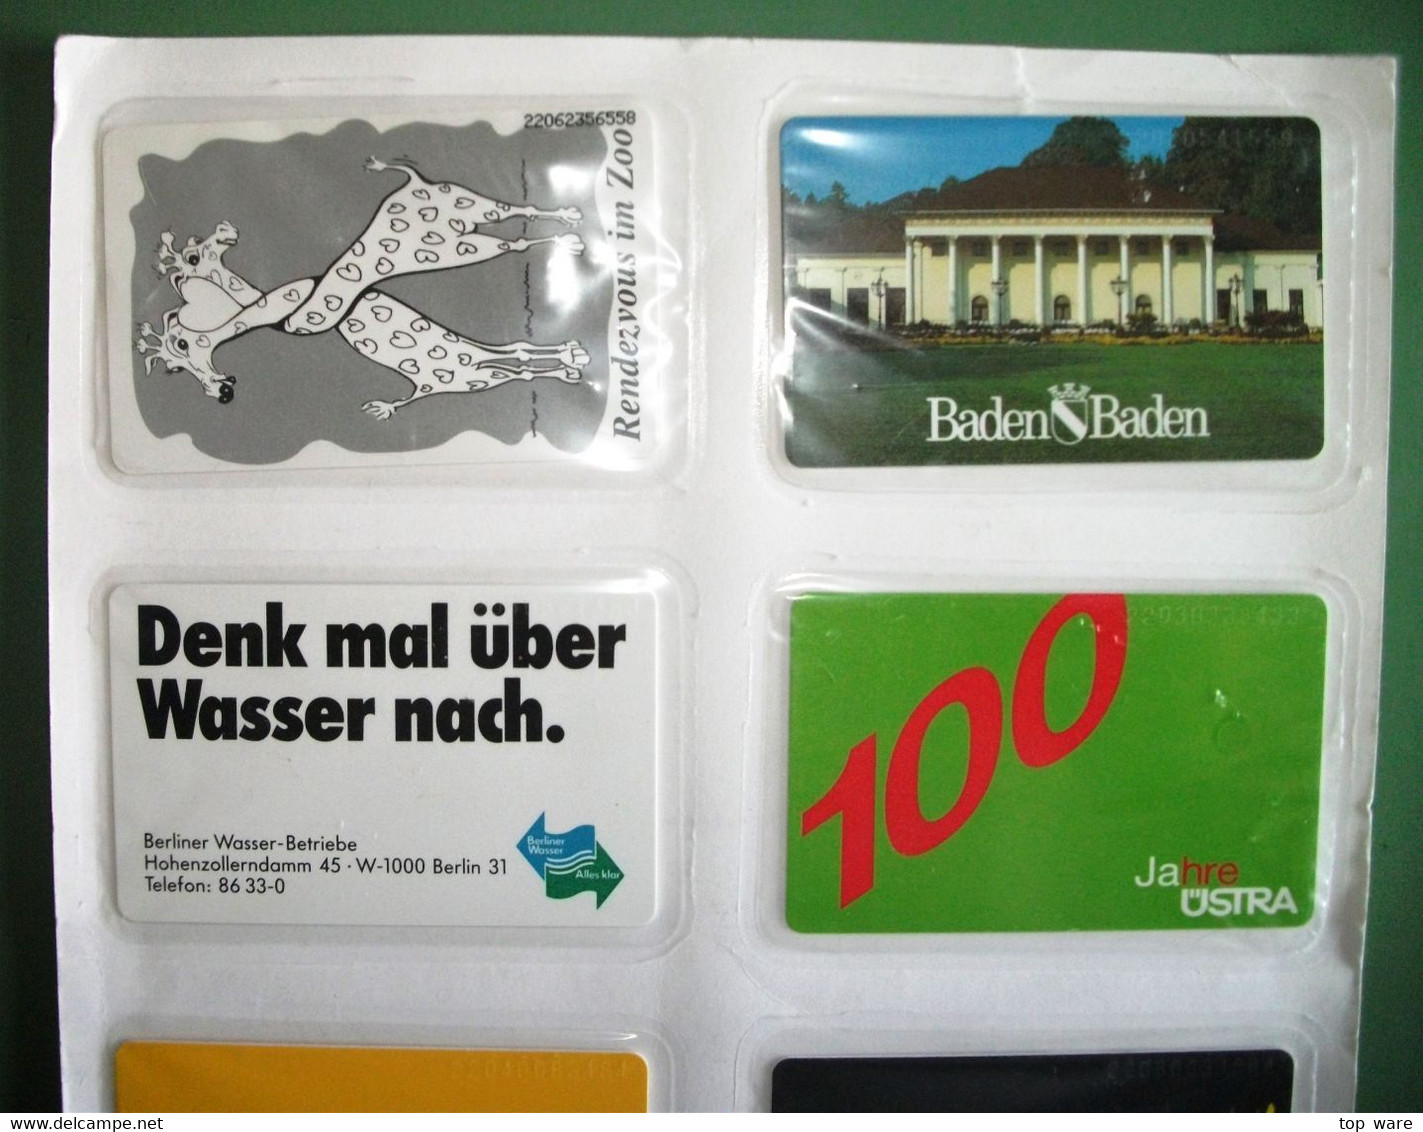 8 Telefonkarten Aus 1992 - S41 S44 S45 S47 S48 S49 S52 S57  - Original Verschweißt Vom Zentralen Kartenservice - [6] Colecciones